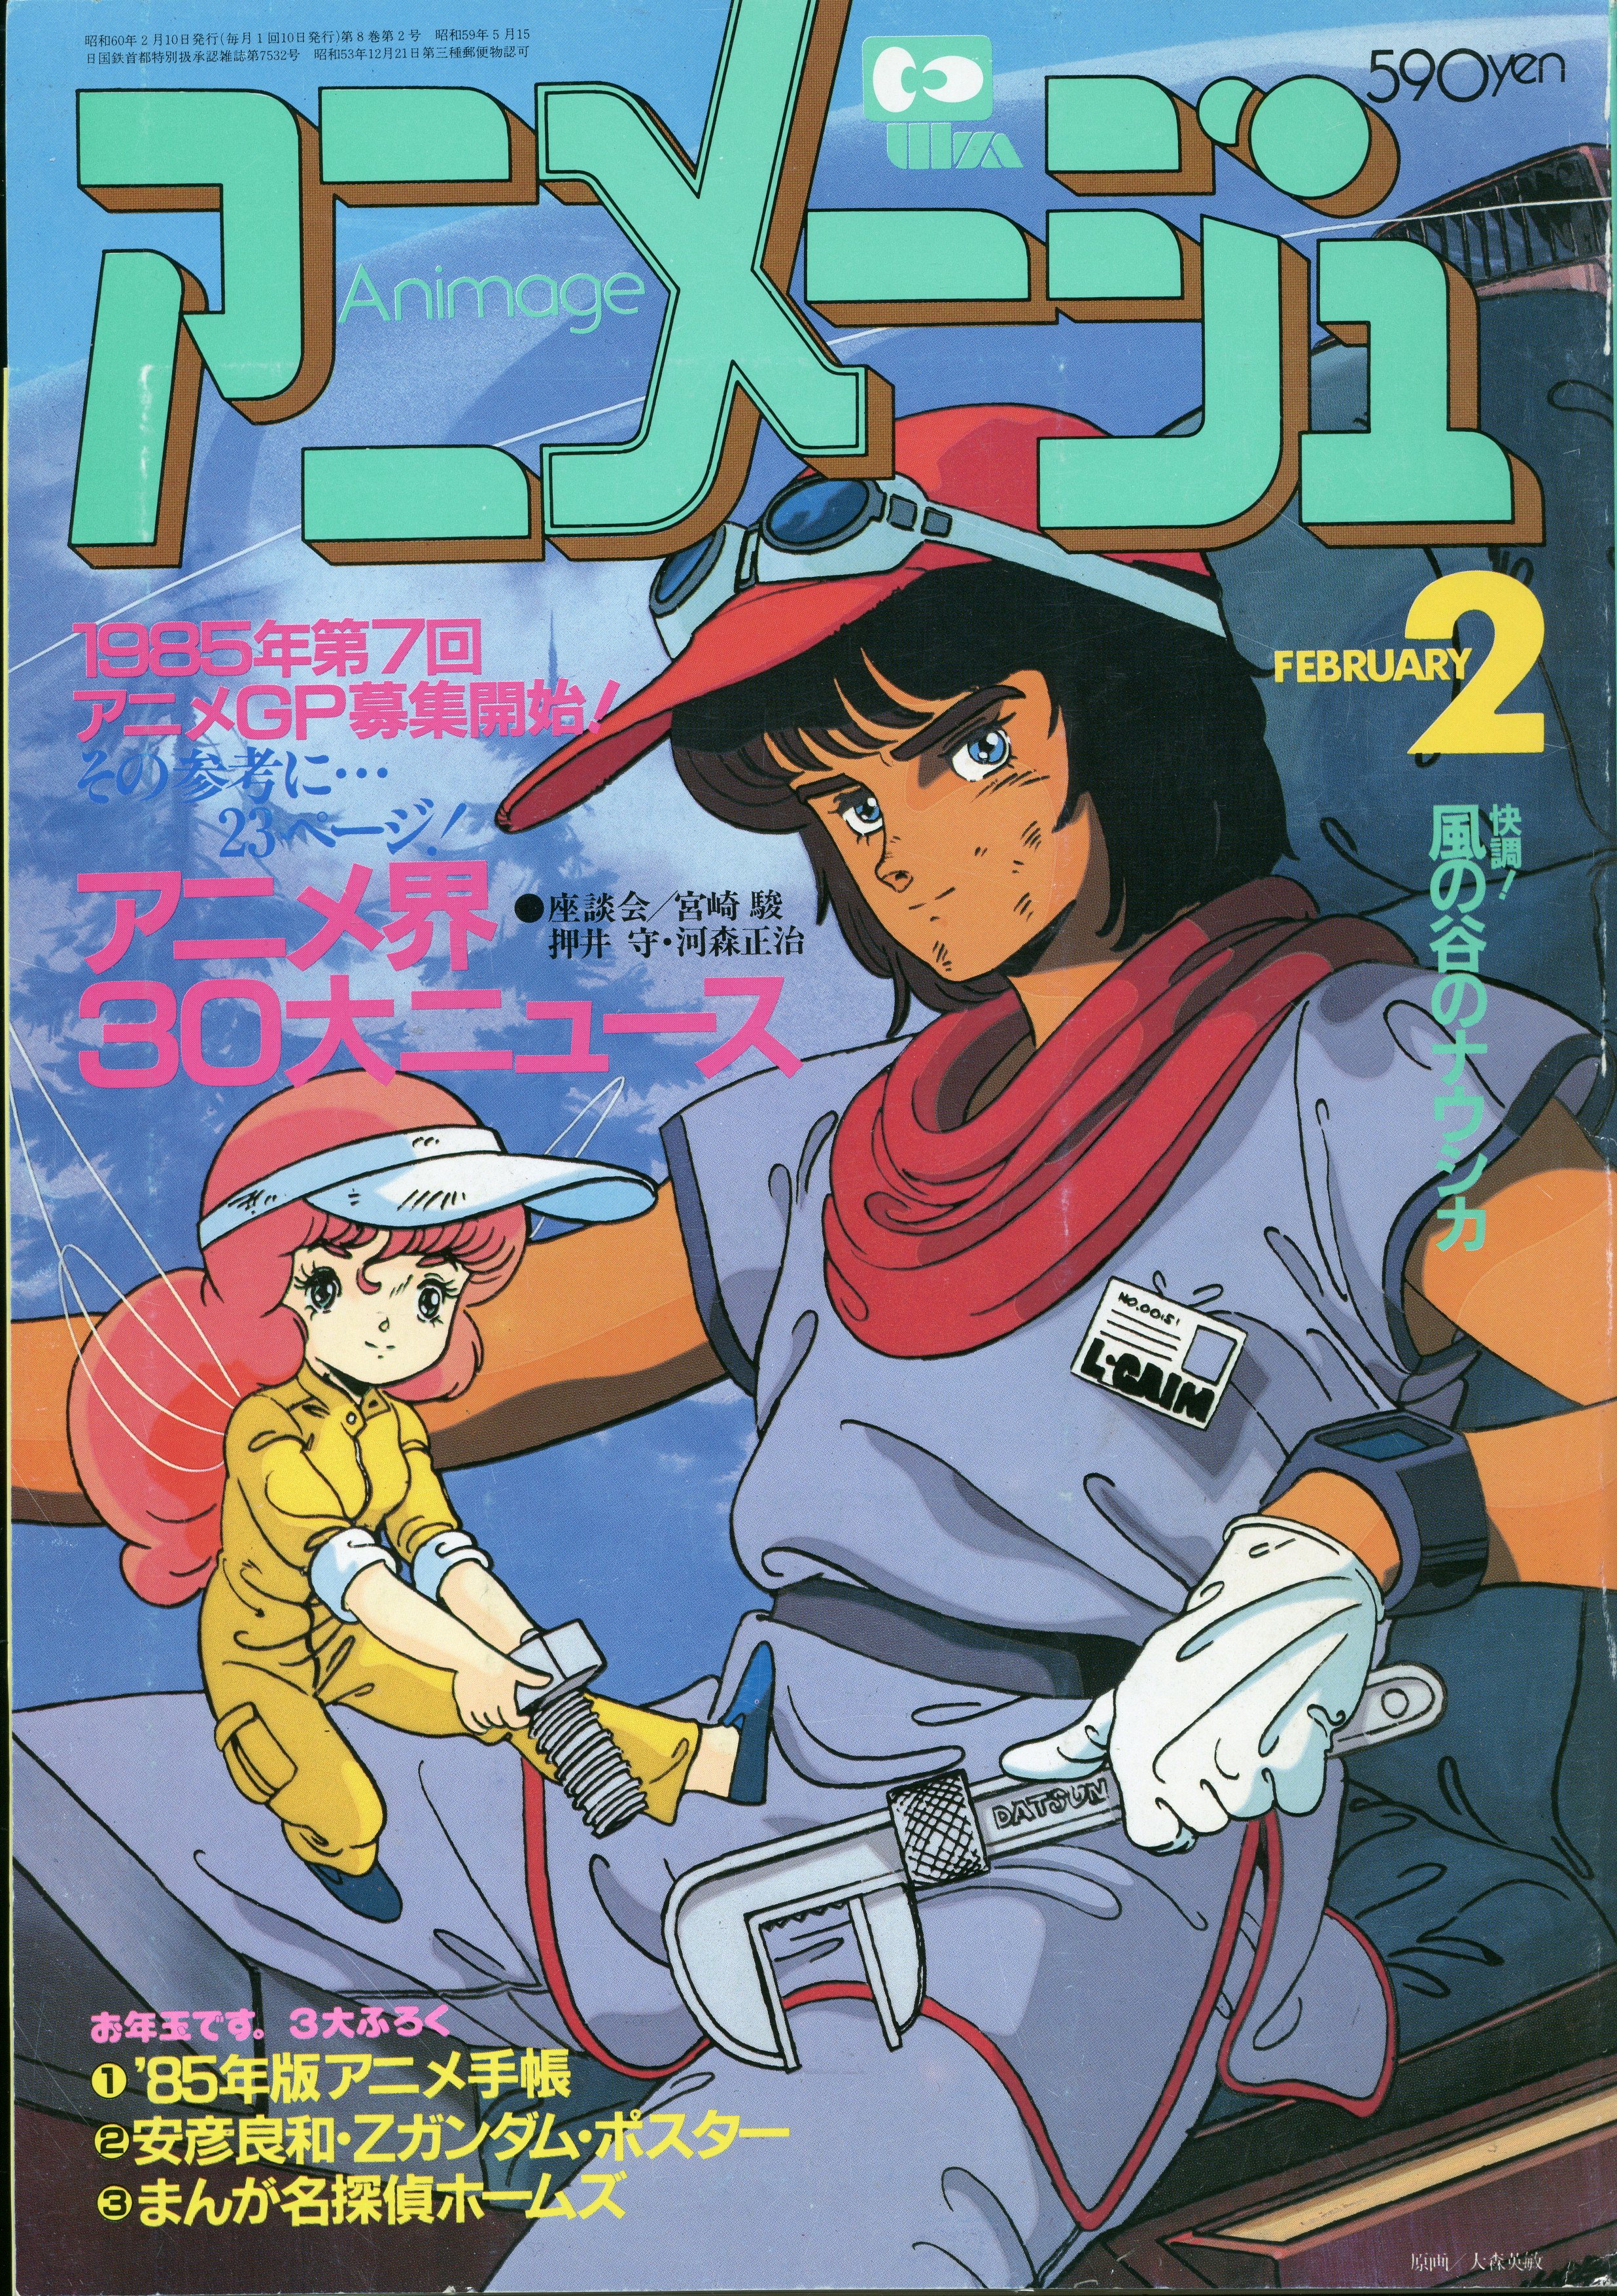 徳間書店 1985年(昭和60年)のアニメ雑誌 本誌のみ アニメージュ1985年